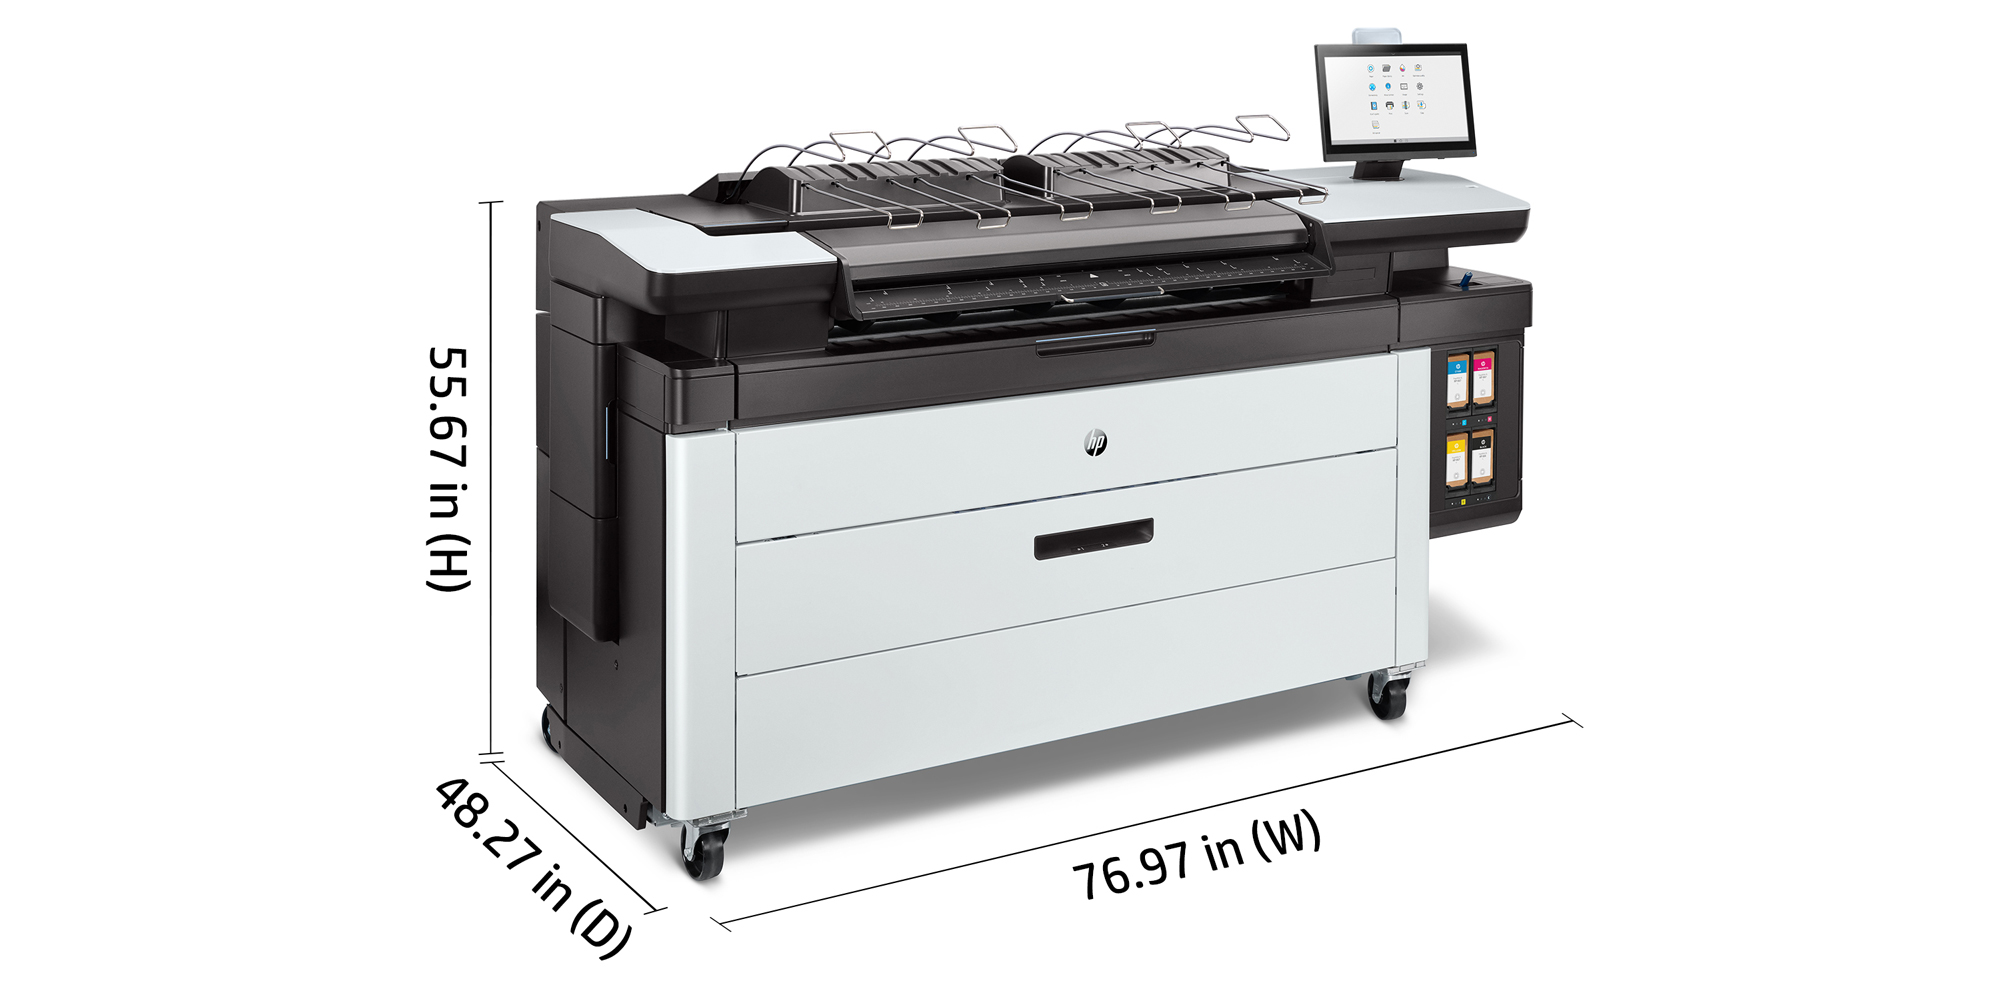 PageWide XL 3920 Multifunction Printer